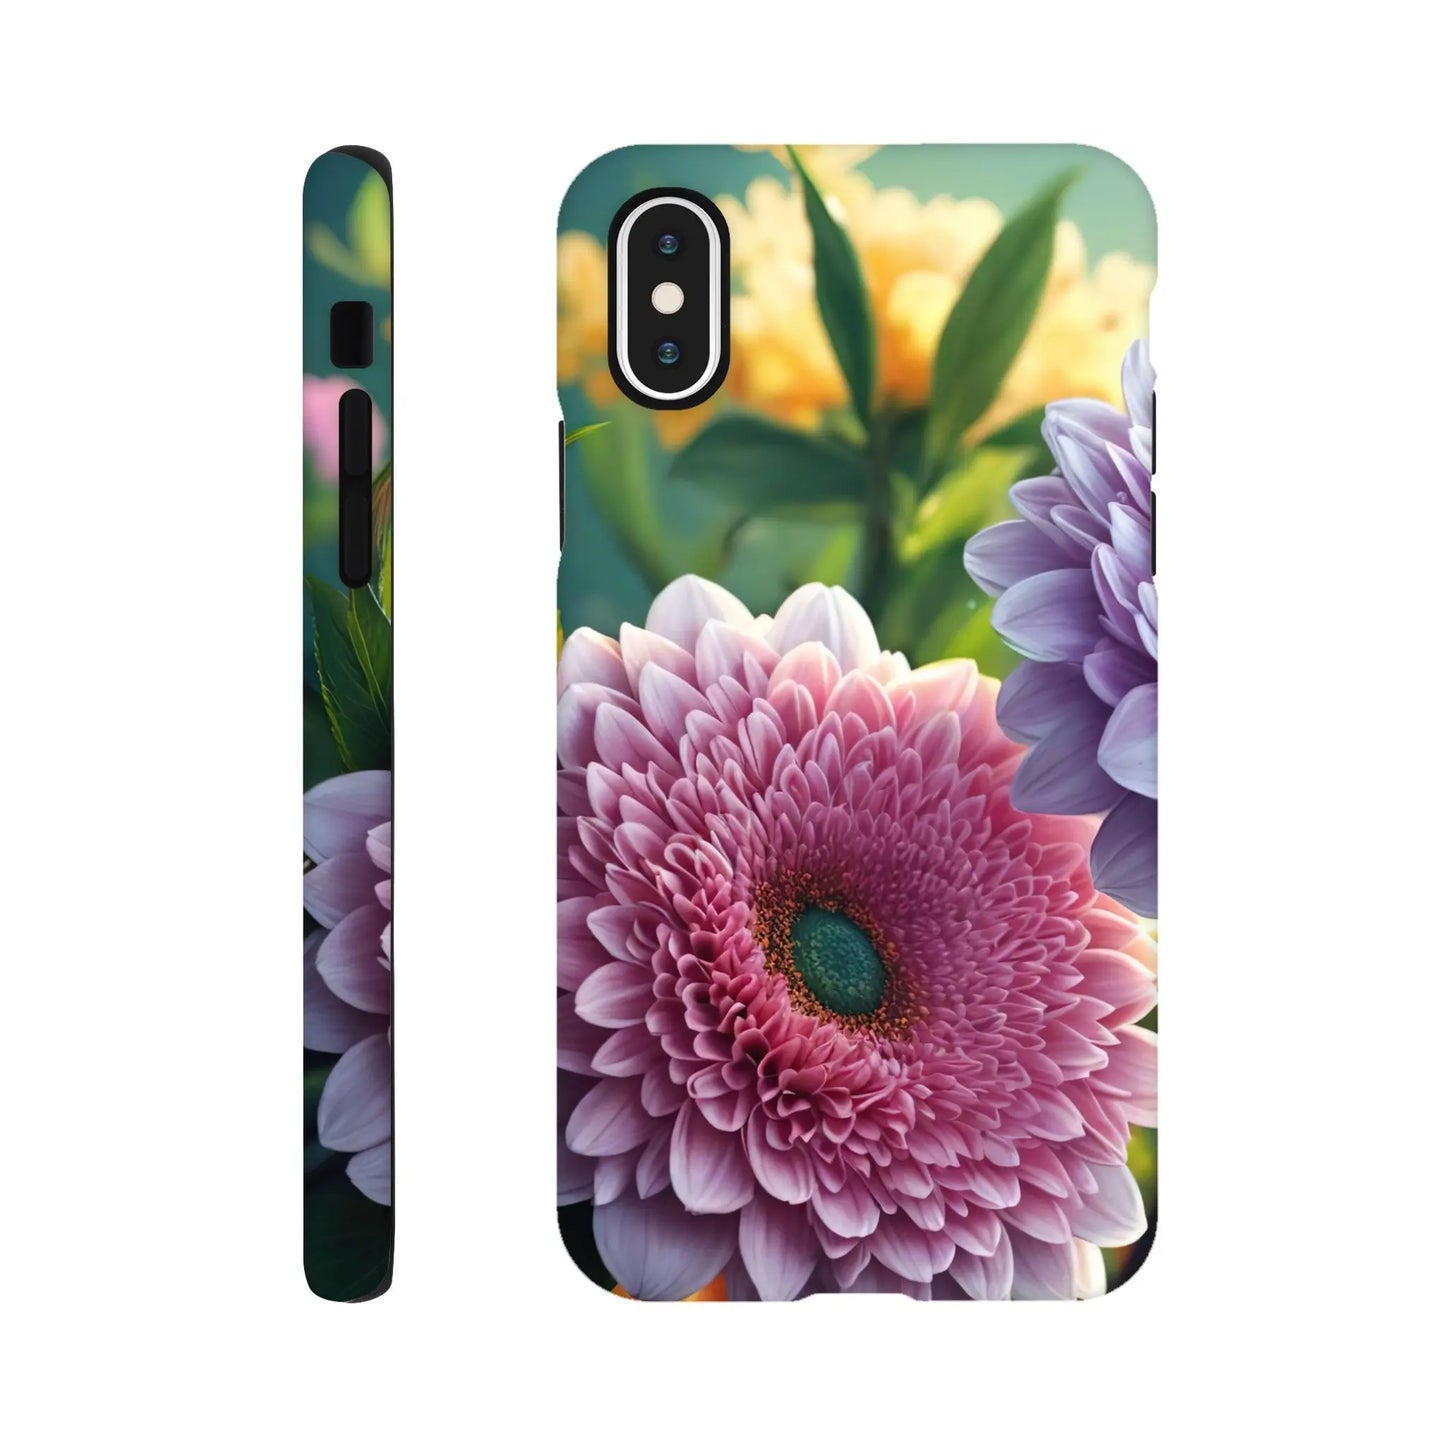 Smartphone-Hülle "Hart" - Blumen Vielfalt - Foto Stil, KI-Kunst, Pflanzen, iPhone-X - RolConArt